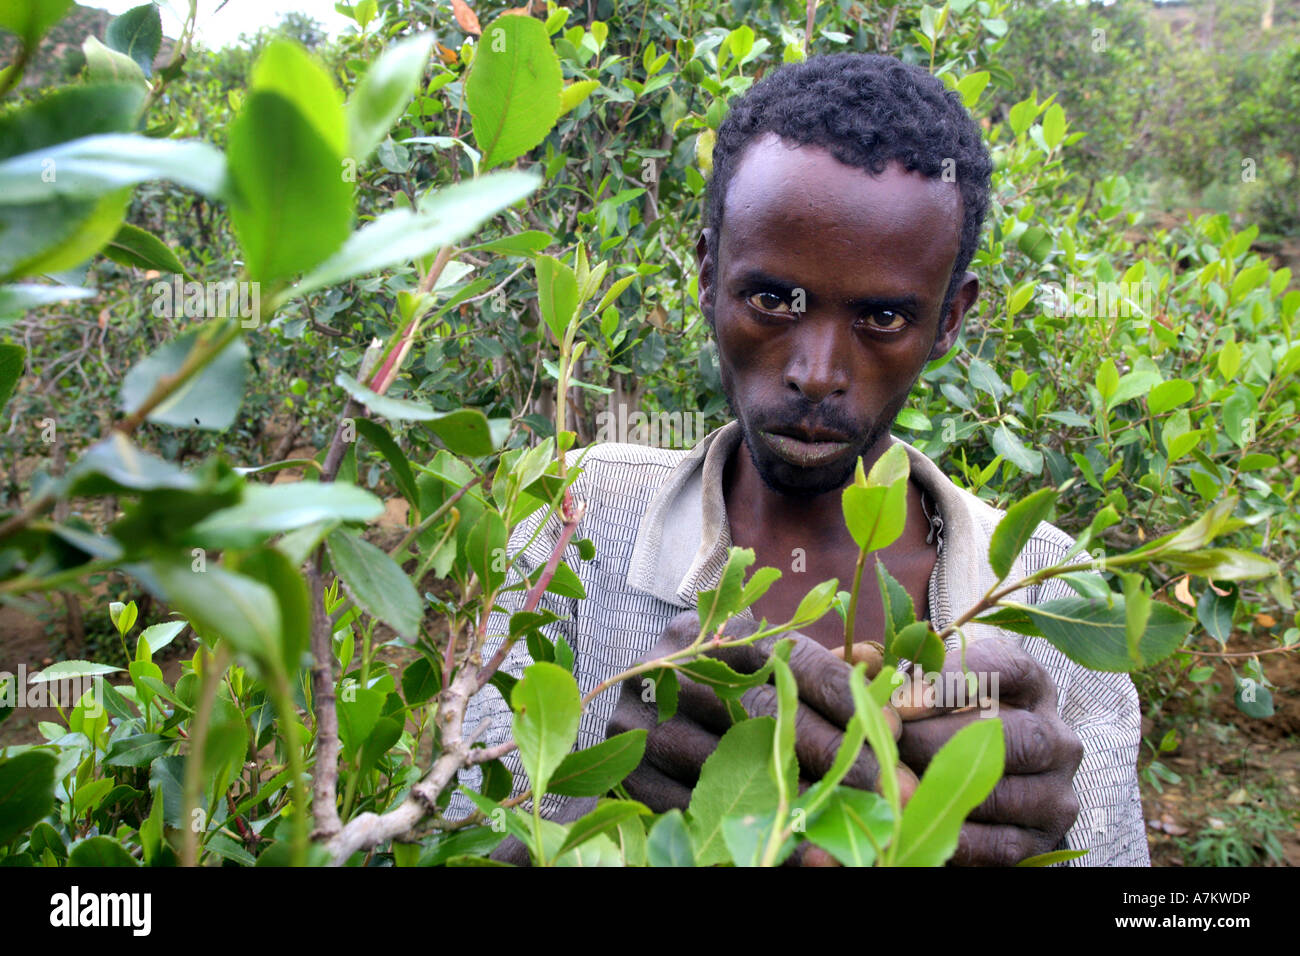 Etiopia - contadino raccoglie le foglie delle piante farmaco Chat nella sua fattoria nei pressi di Harar Foto Stock